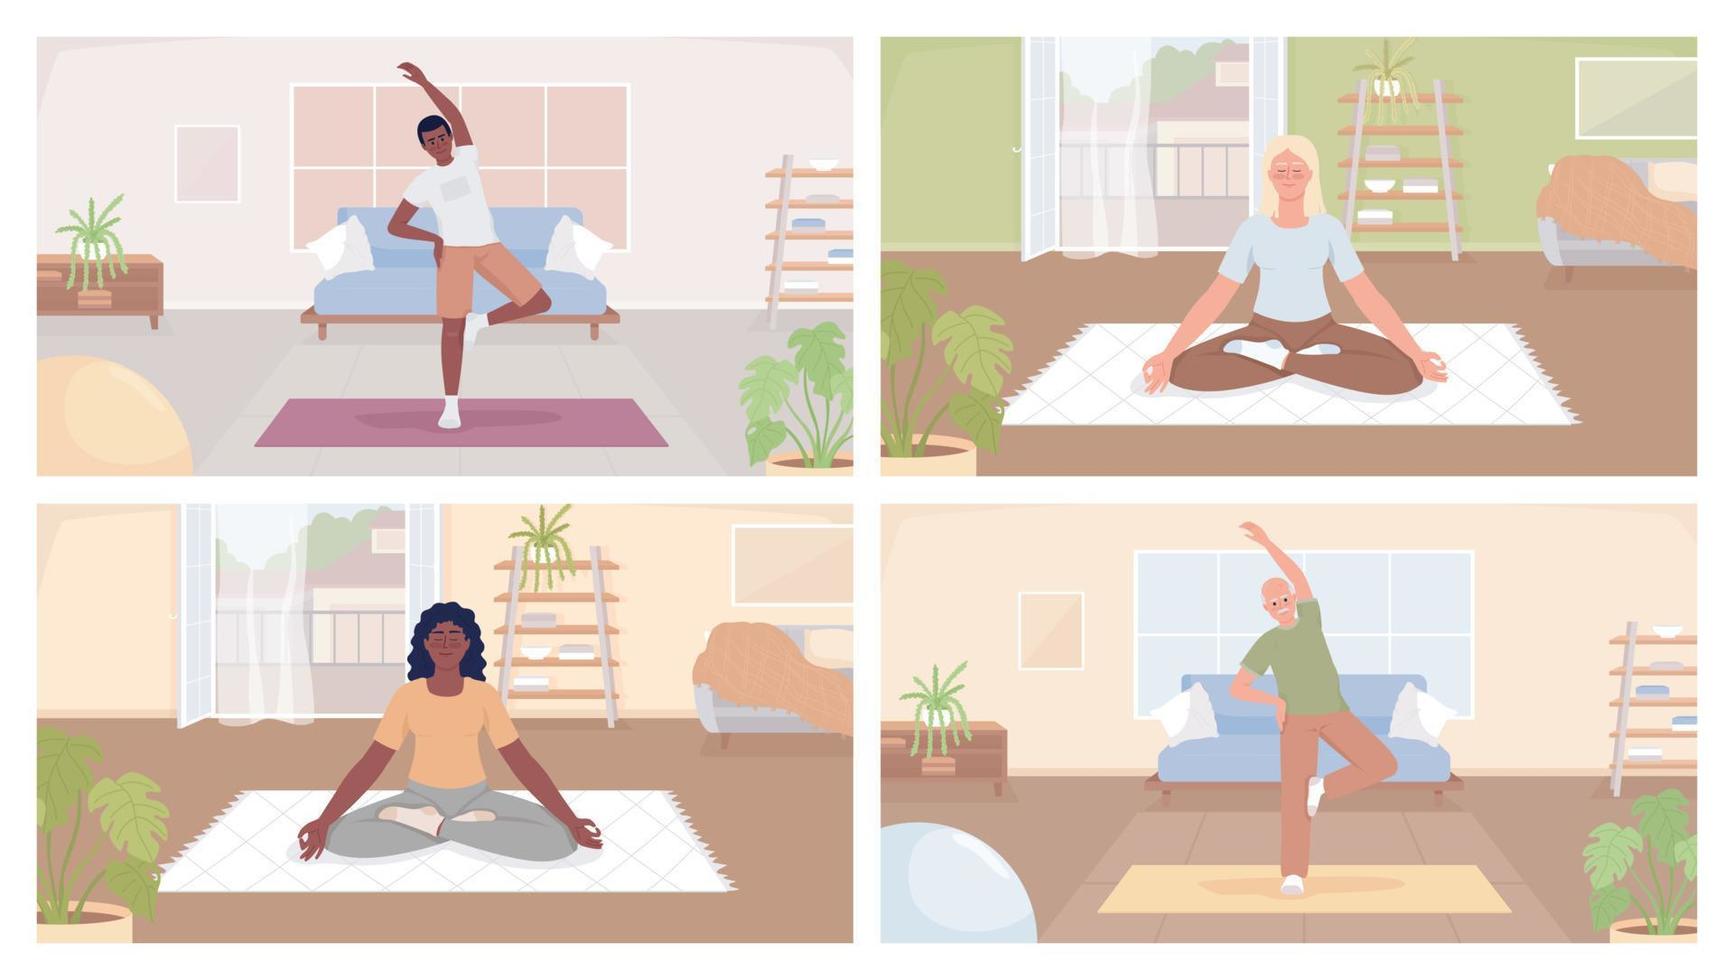 mindfulness öva på Hem platt Färg vektor illustration uppsättning. människor utövar på yoga mattor. fullt redigerbar 2d enkel tecknad serie tecken samling med mysigt levande rum interiörer på bakgrund